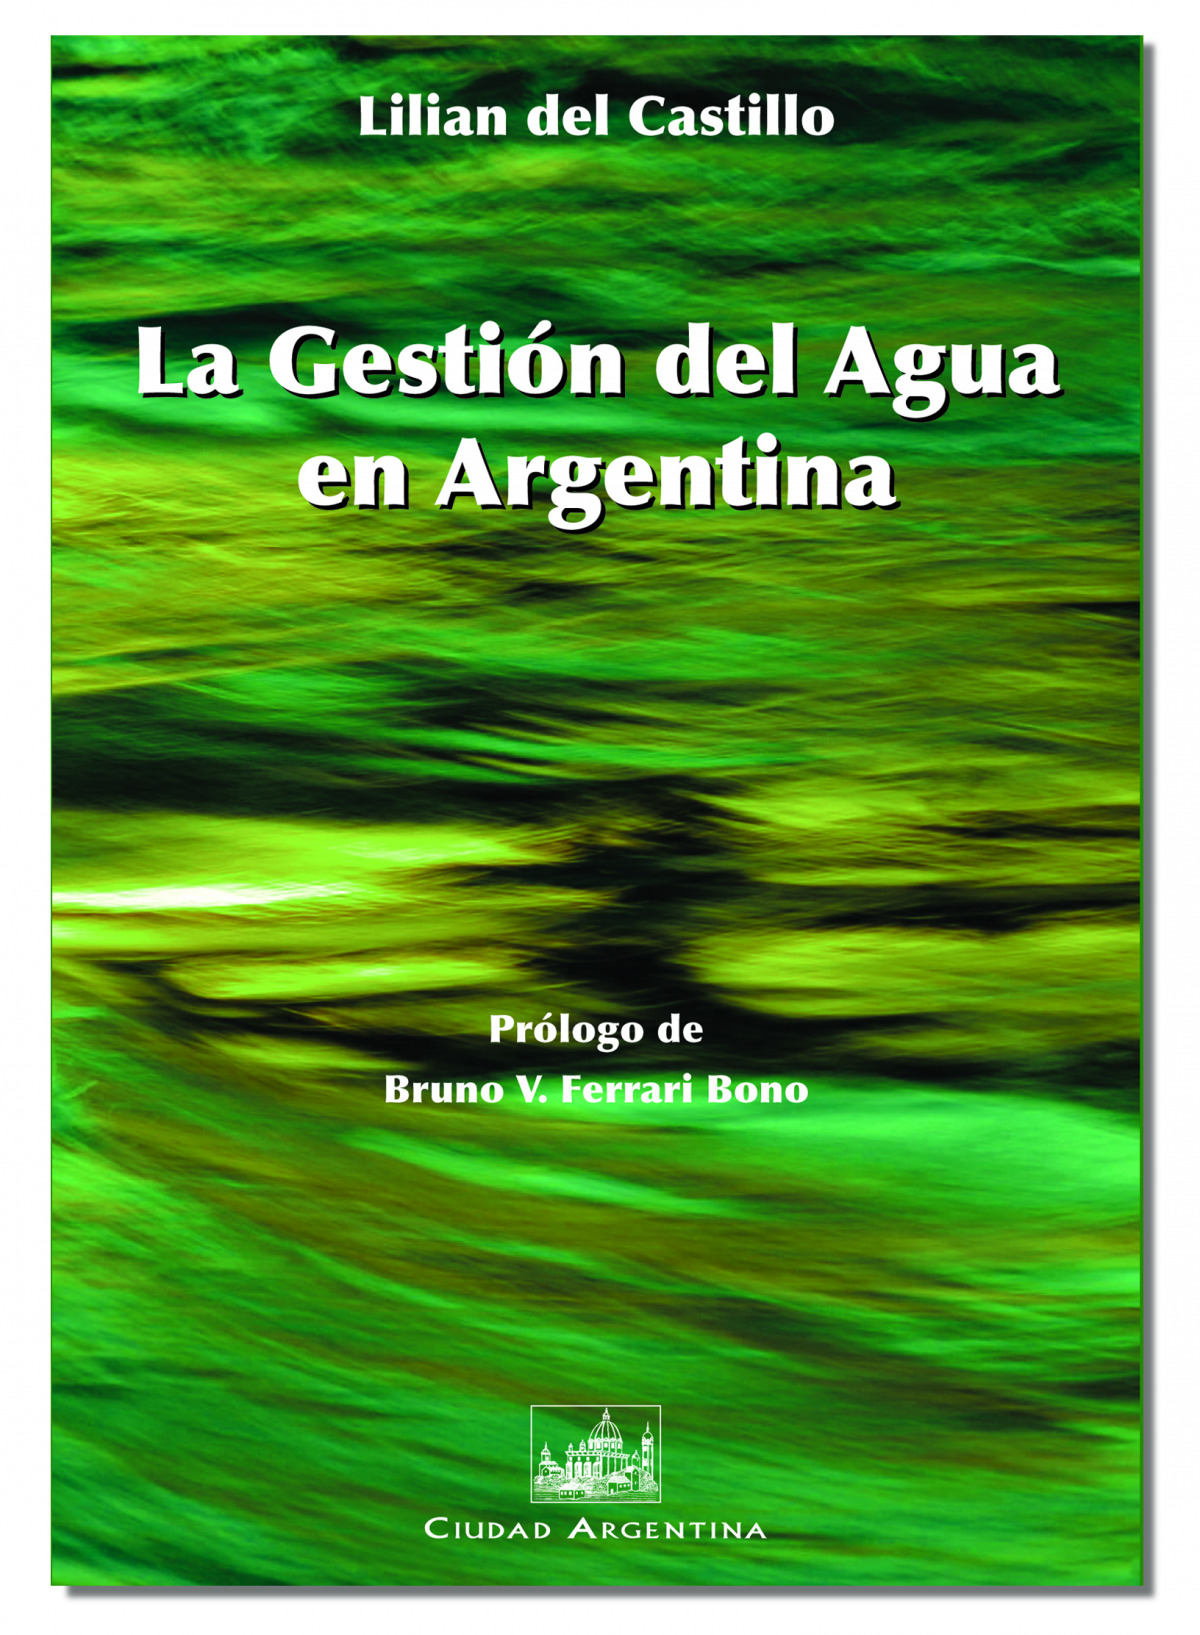 La Gestión del Agua en Argentina - del Castillo, Lilián